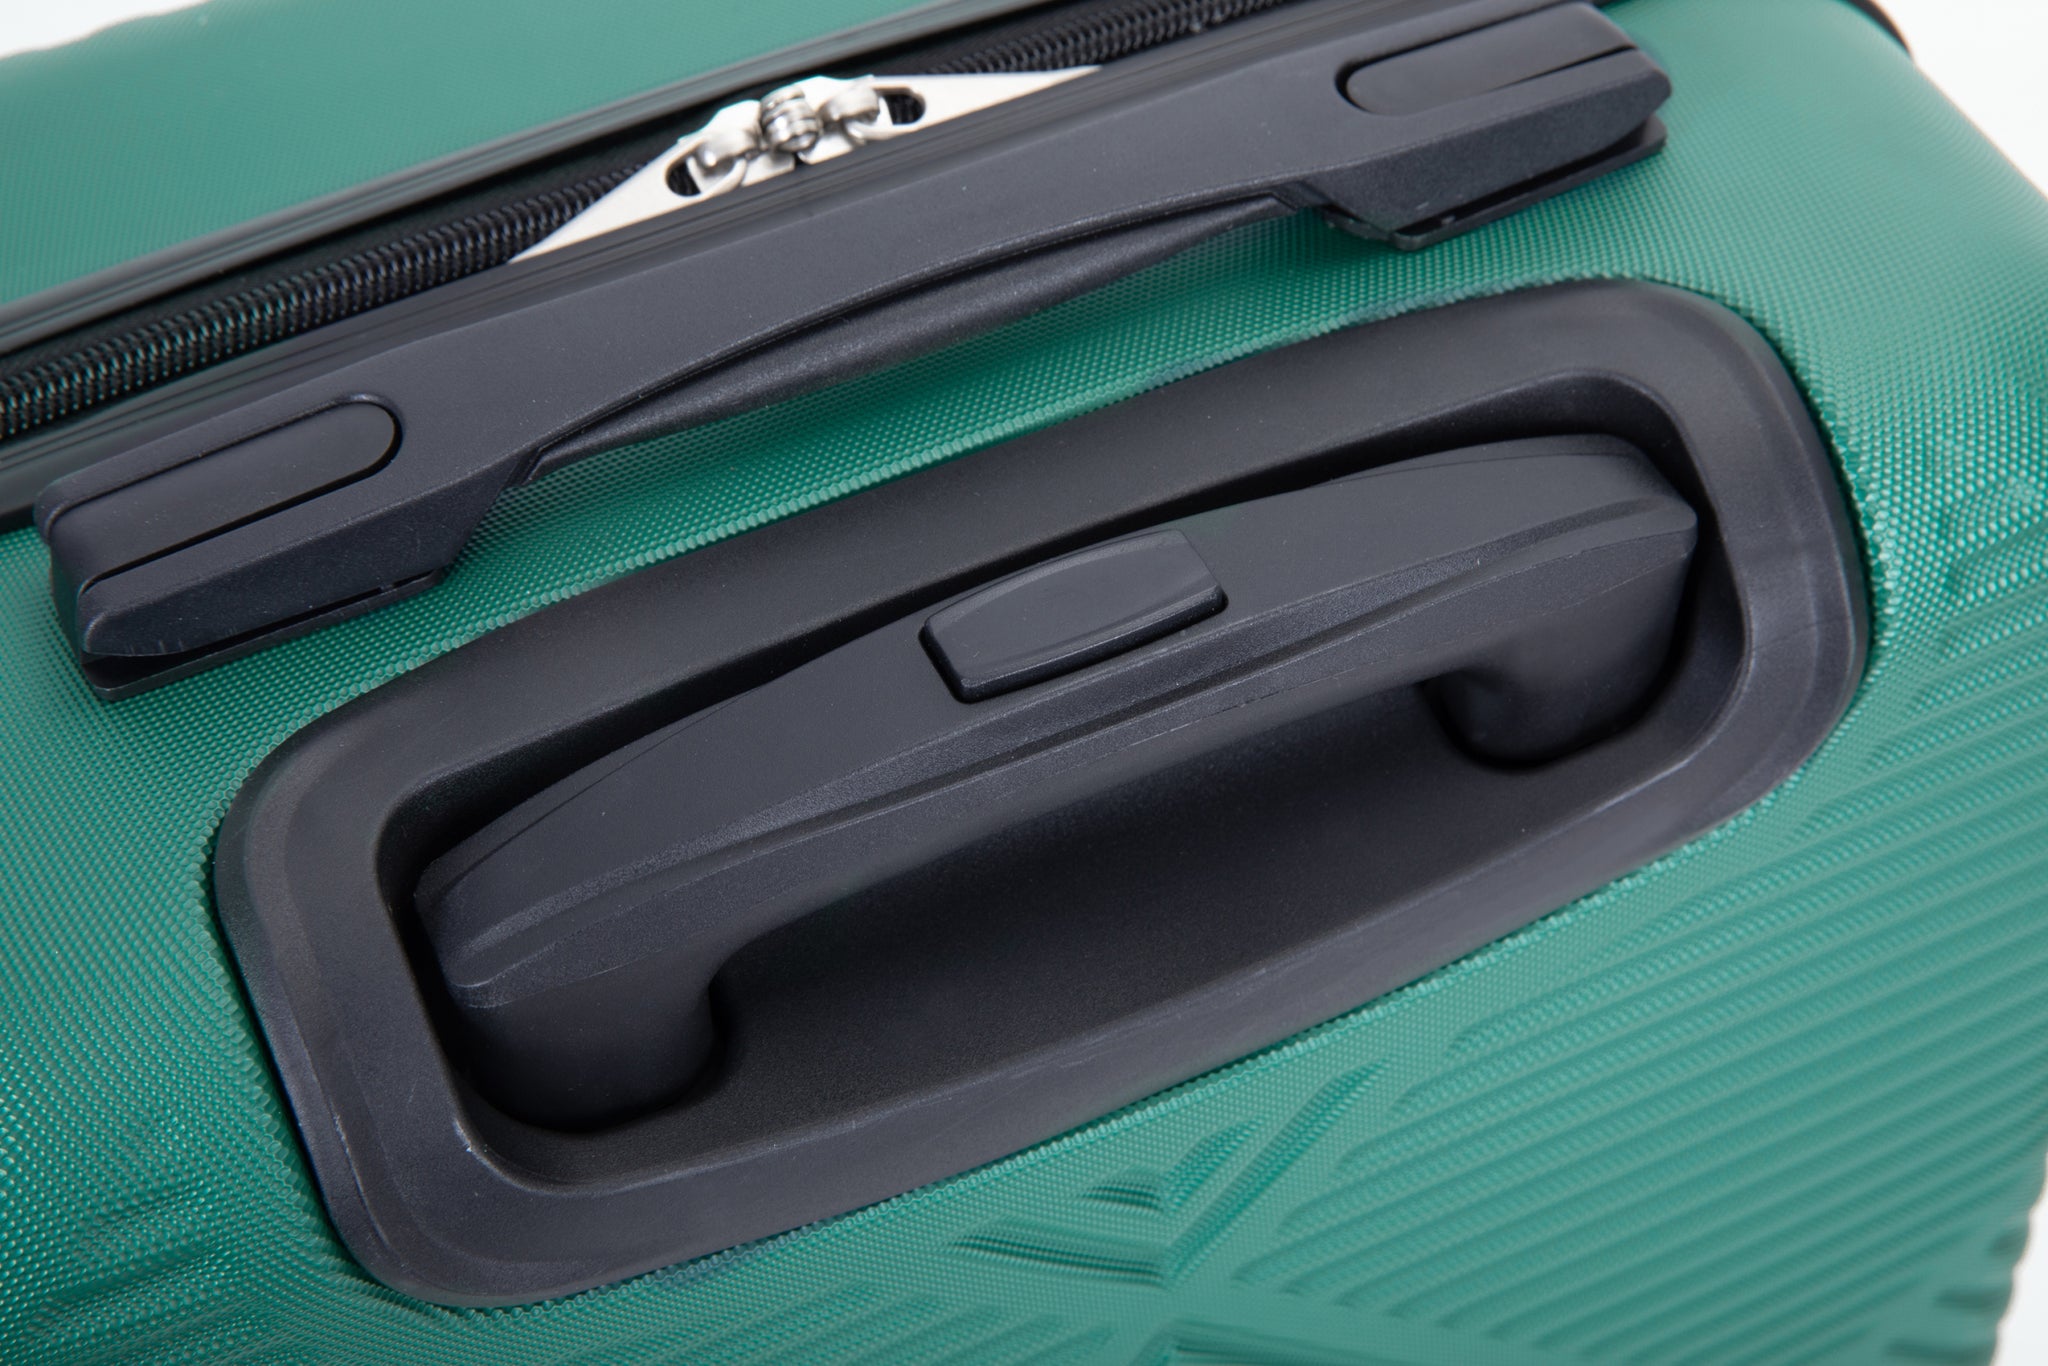 2Piece Luggage Sets ABS Lightweight Suitcase , Spinner dark green-abs